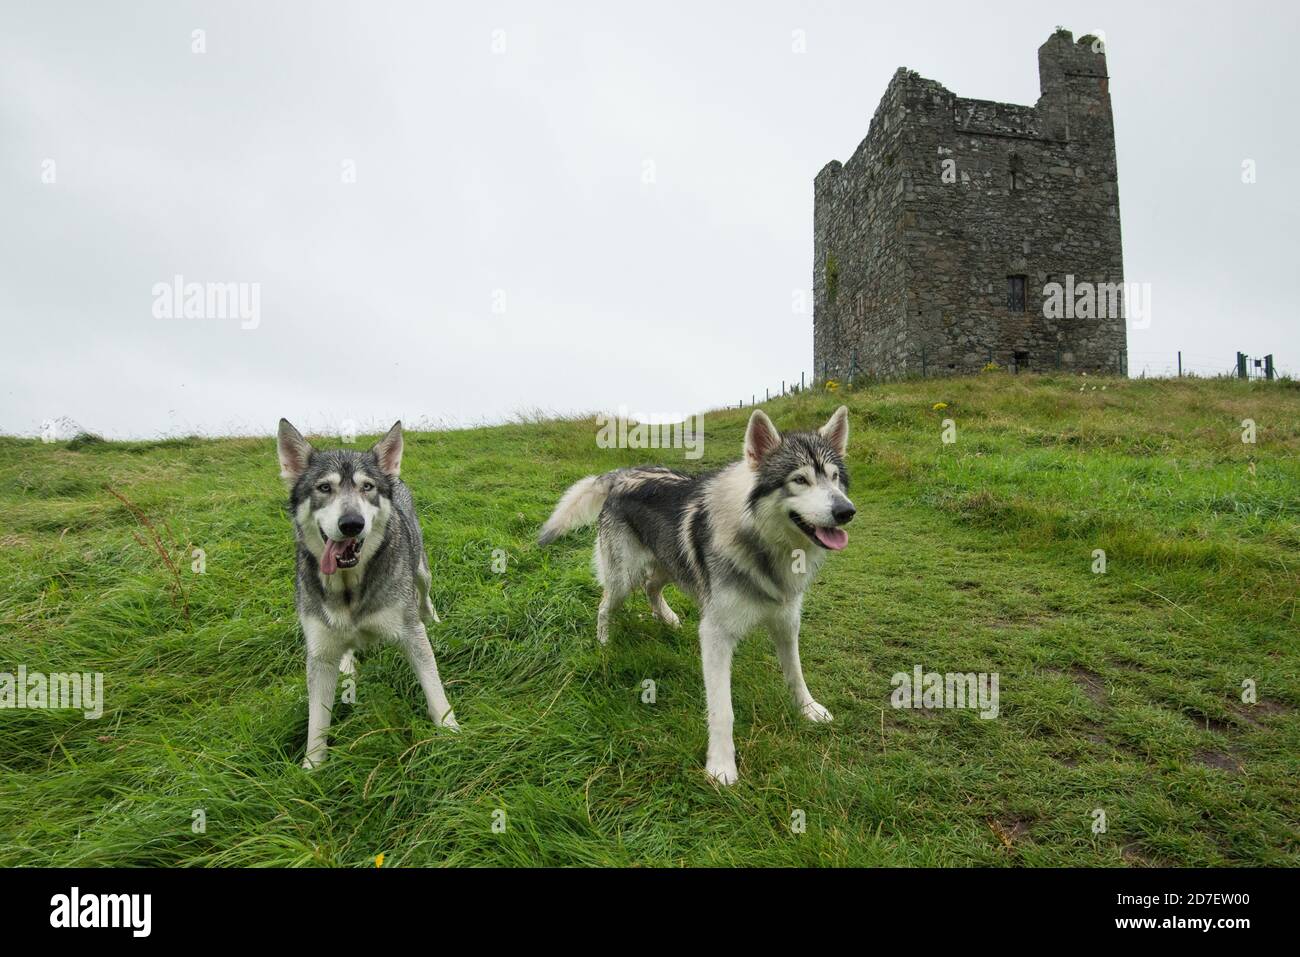 Ritratto di cani nordisti inuit che hanno giocato i direwolves 'Summer' e 'Greywind' dalla serie del Trono di Spade, fotografato di fronte al cast di Audley Foto Stock